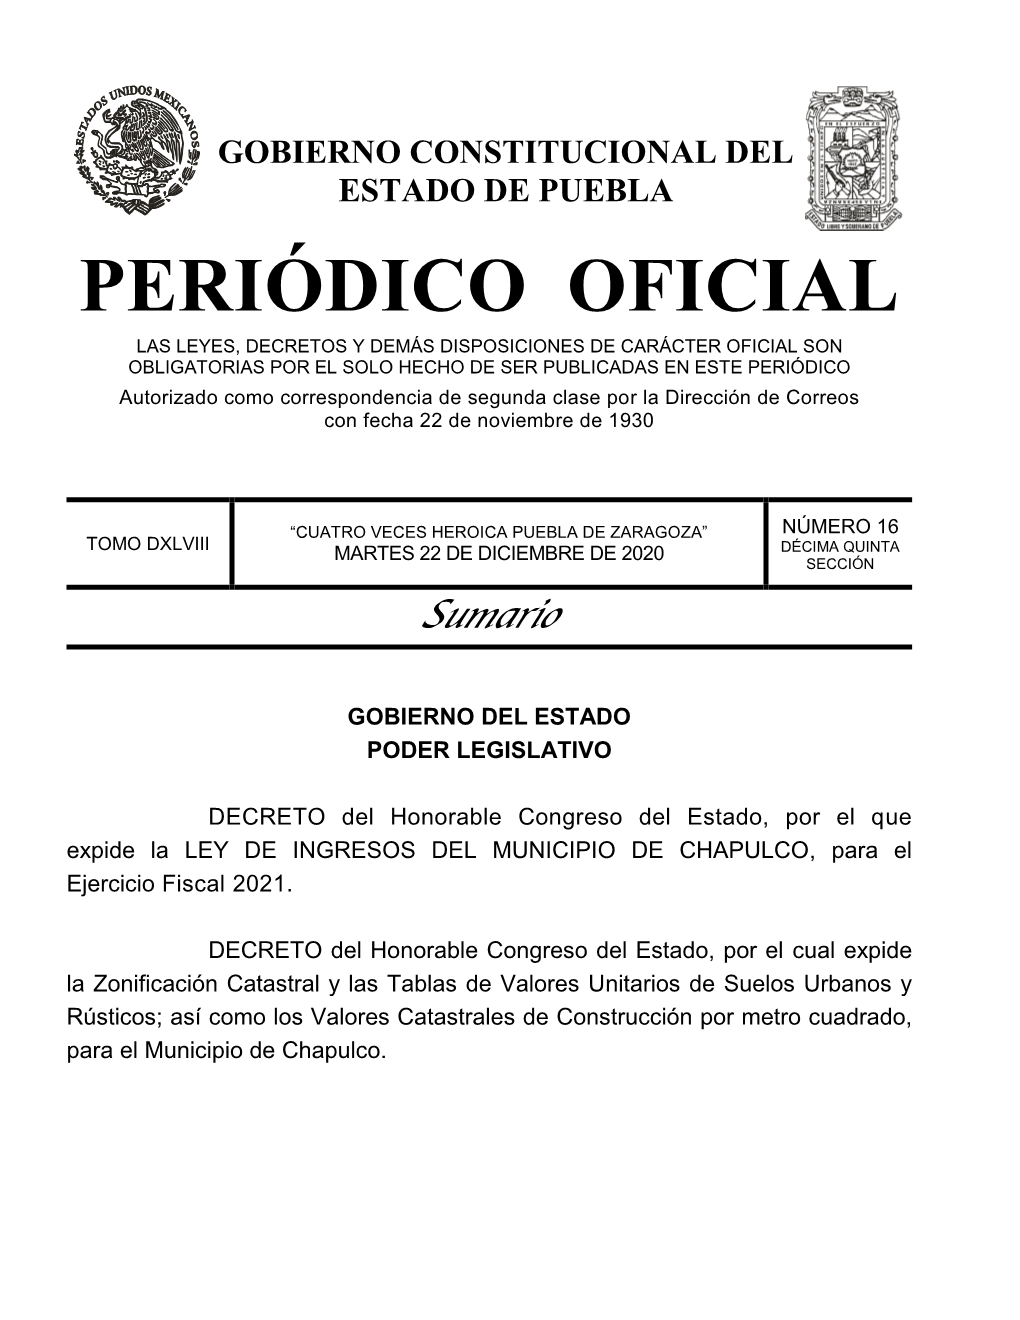 LEY DE INGRESOS DEL MUNICIPIO DE CHAPULCO, Para El Ejercicio Fiscal 2021